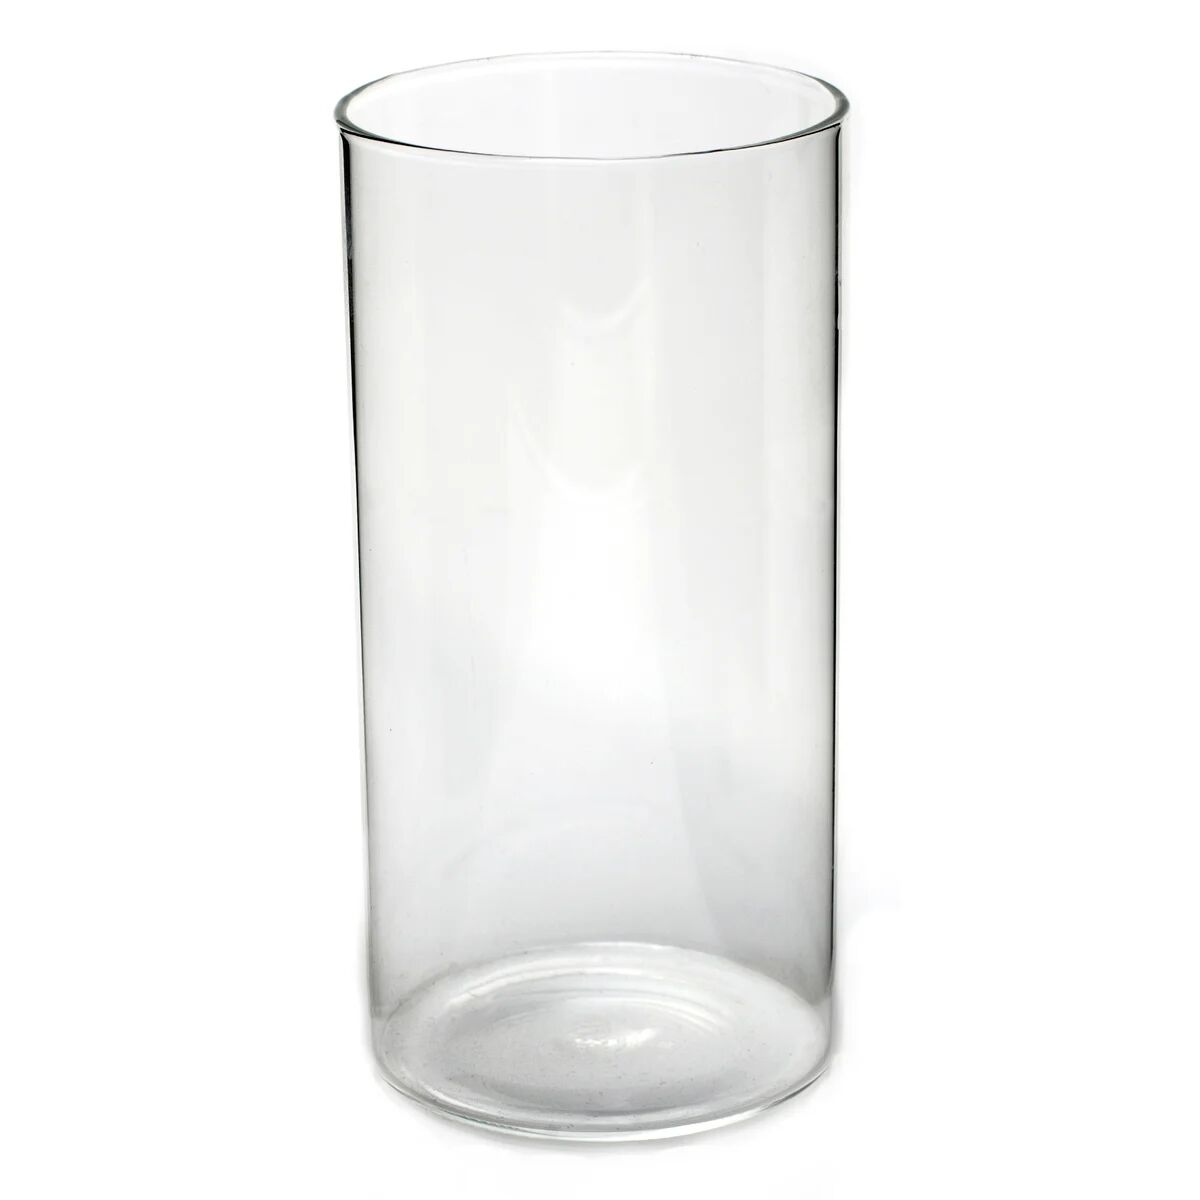 Ørskov glass X-large